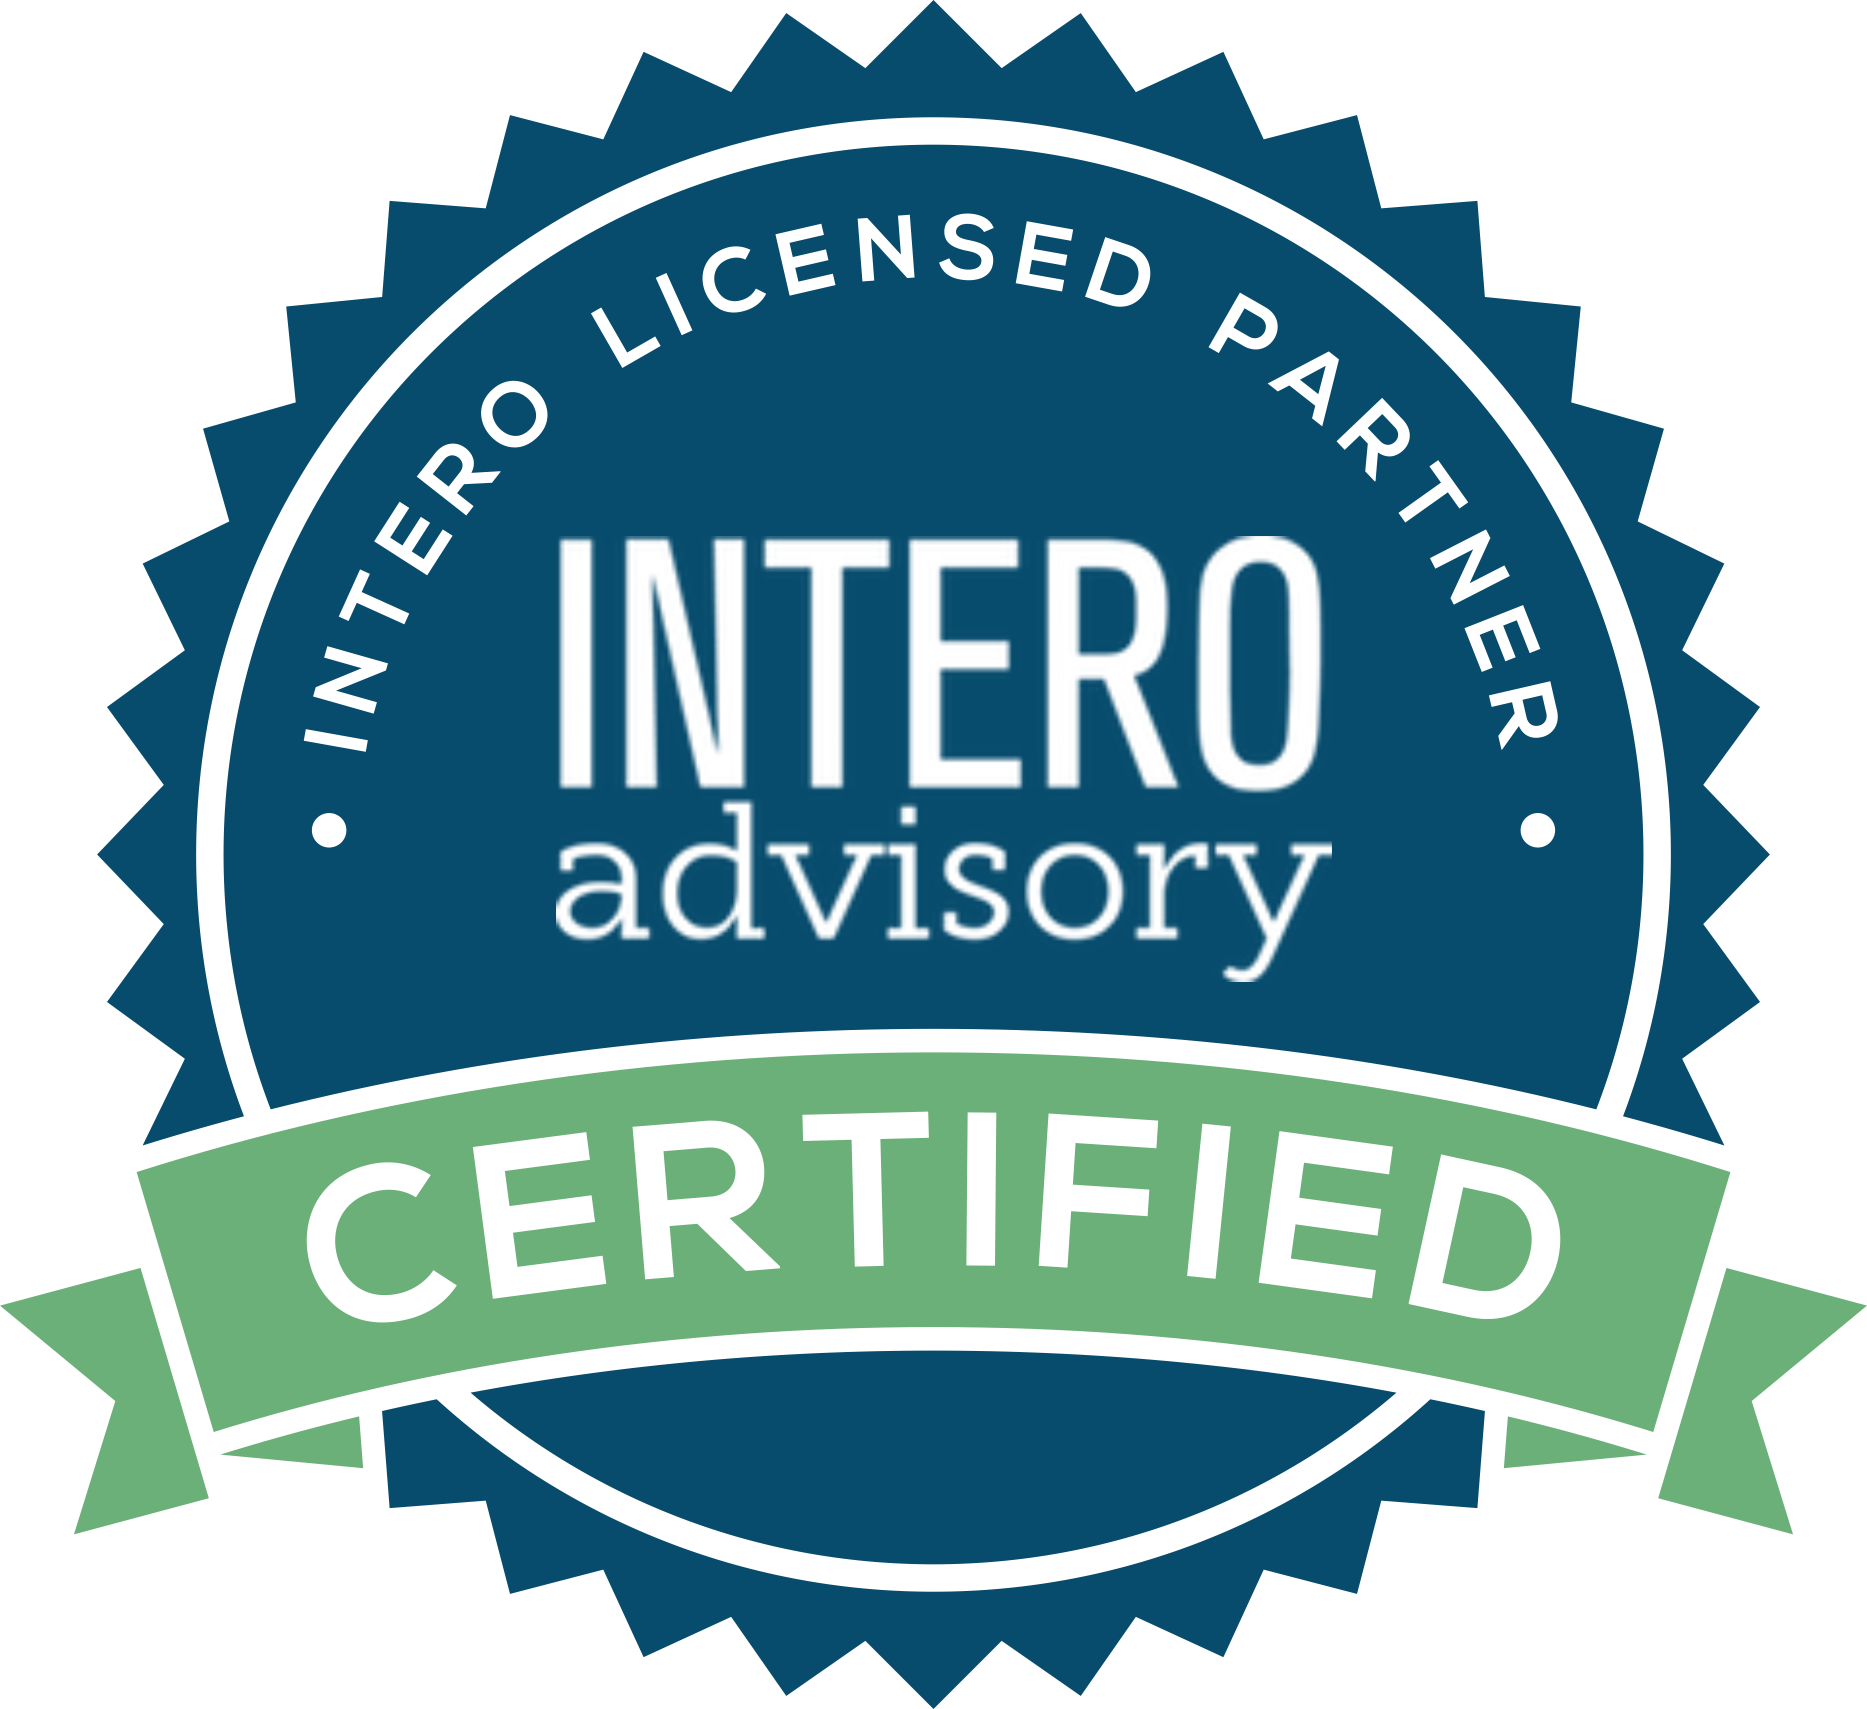 mattculloty Intero Advisory Certified